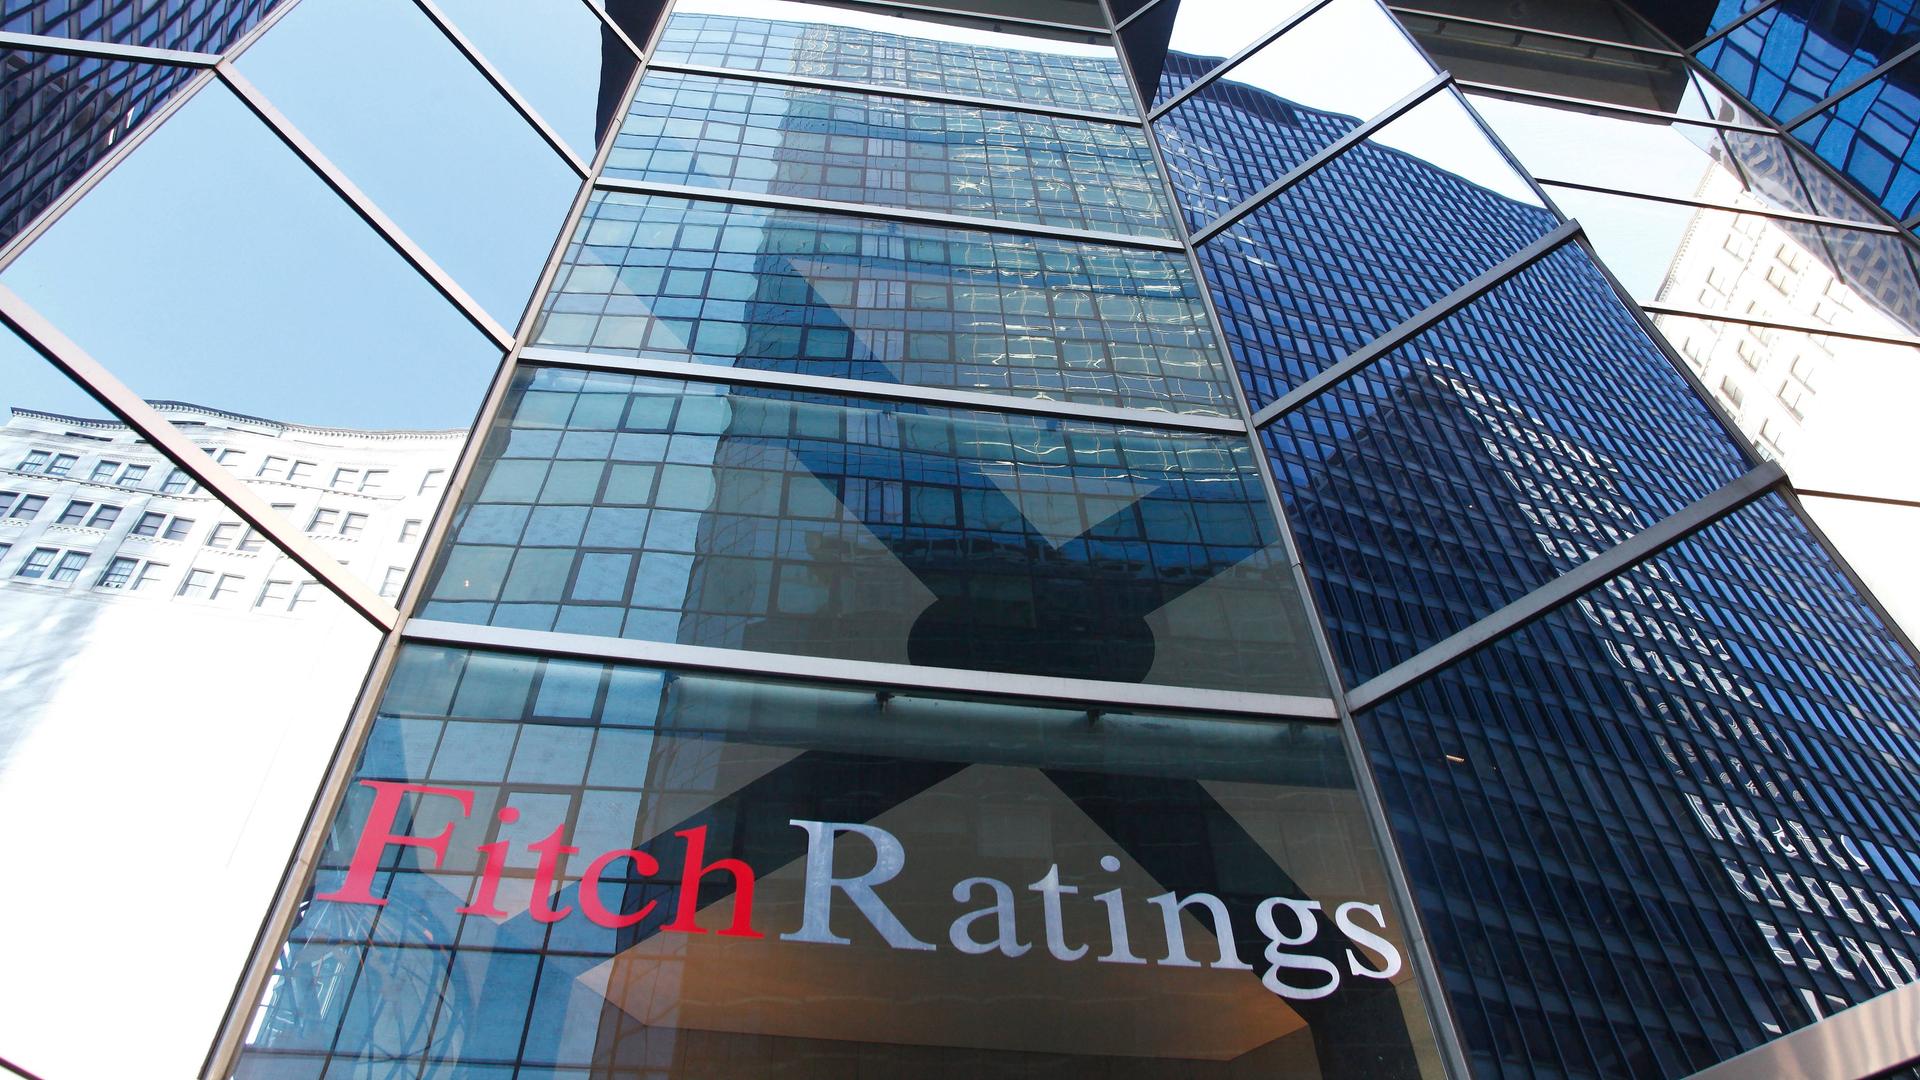 Das Gebäude der Ratingagentur Fitch in New York City. Zu sehen ist der Schriftzug "Fitch Ratings" an einer Glasfassade.